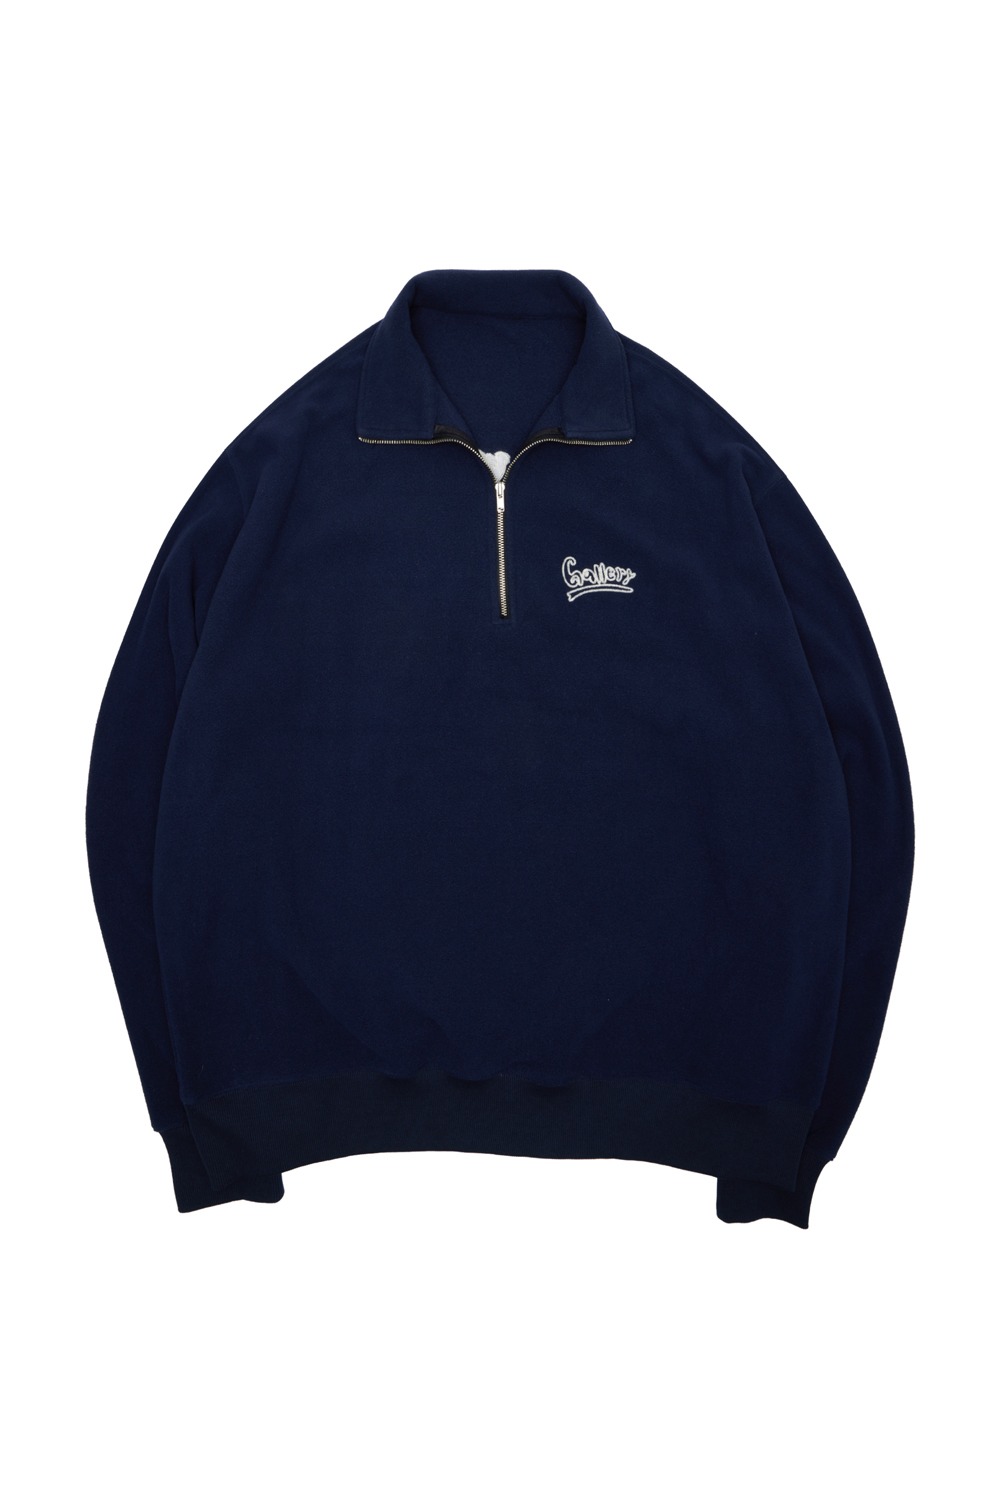 Gallery Fleece Half-Zip Sweatshirt - Navy